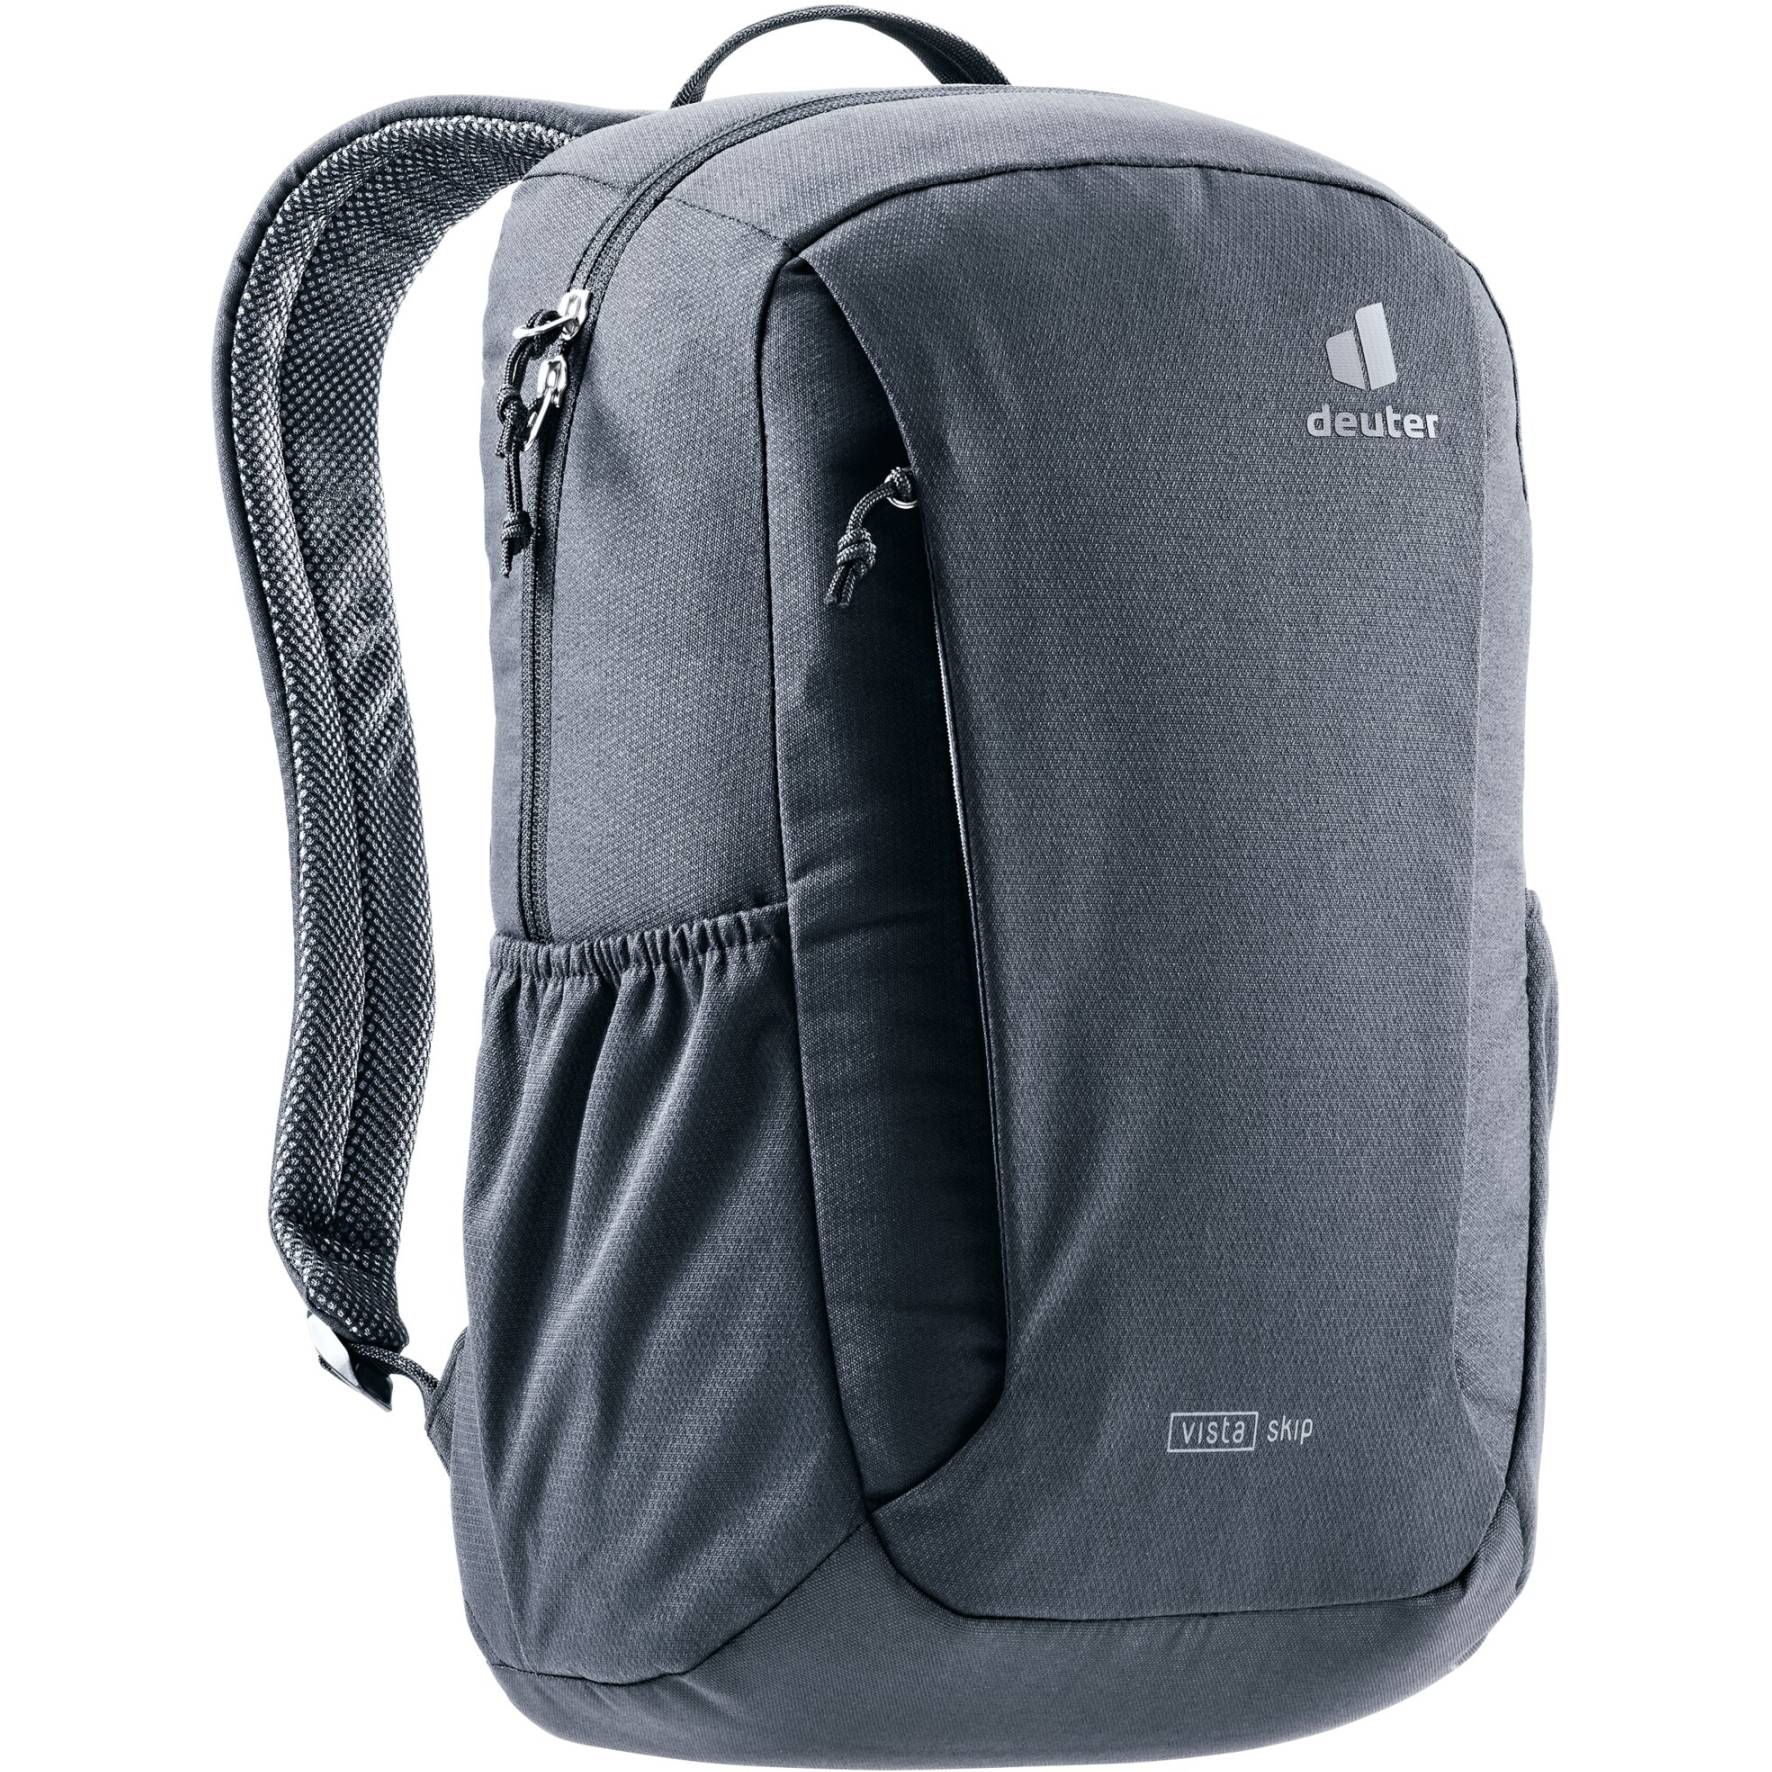 Image of Deuter Vista Skip Backpack 14L - black